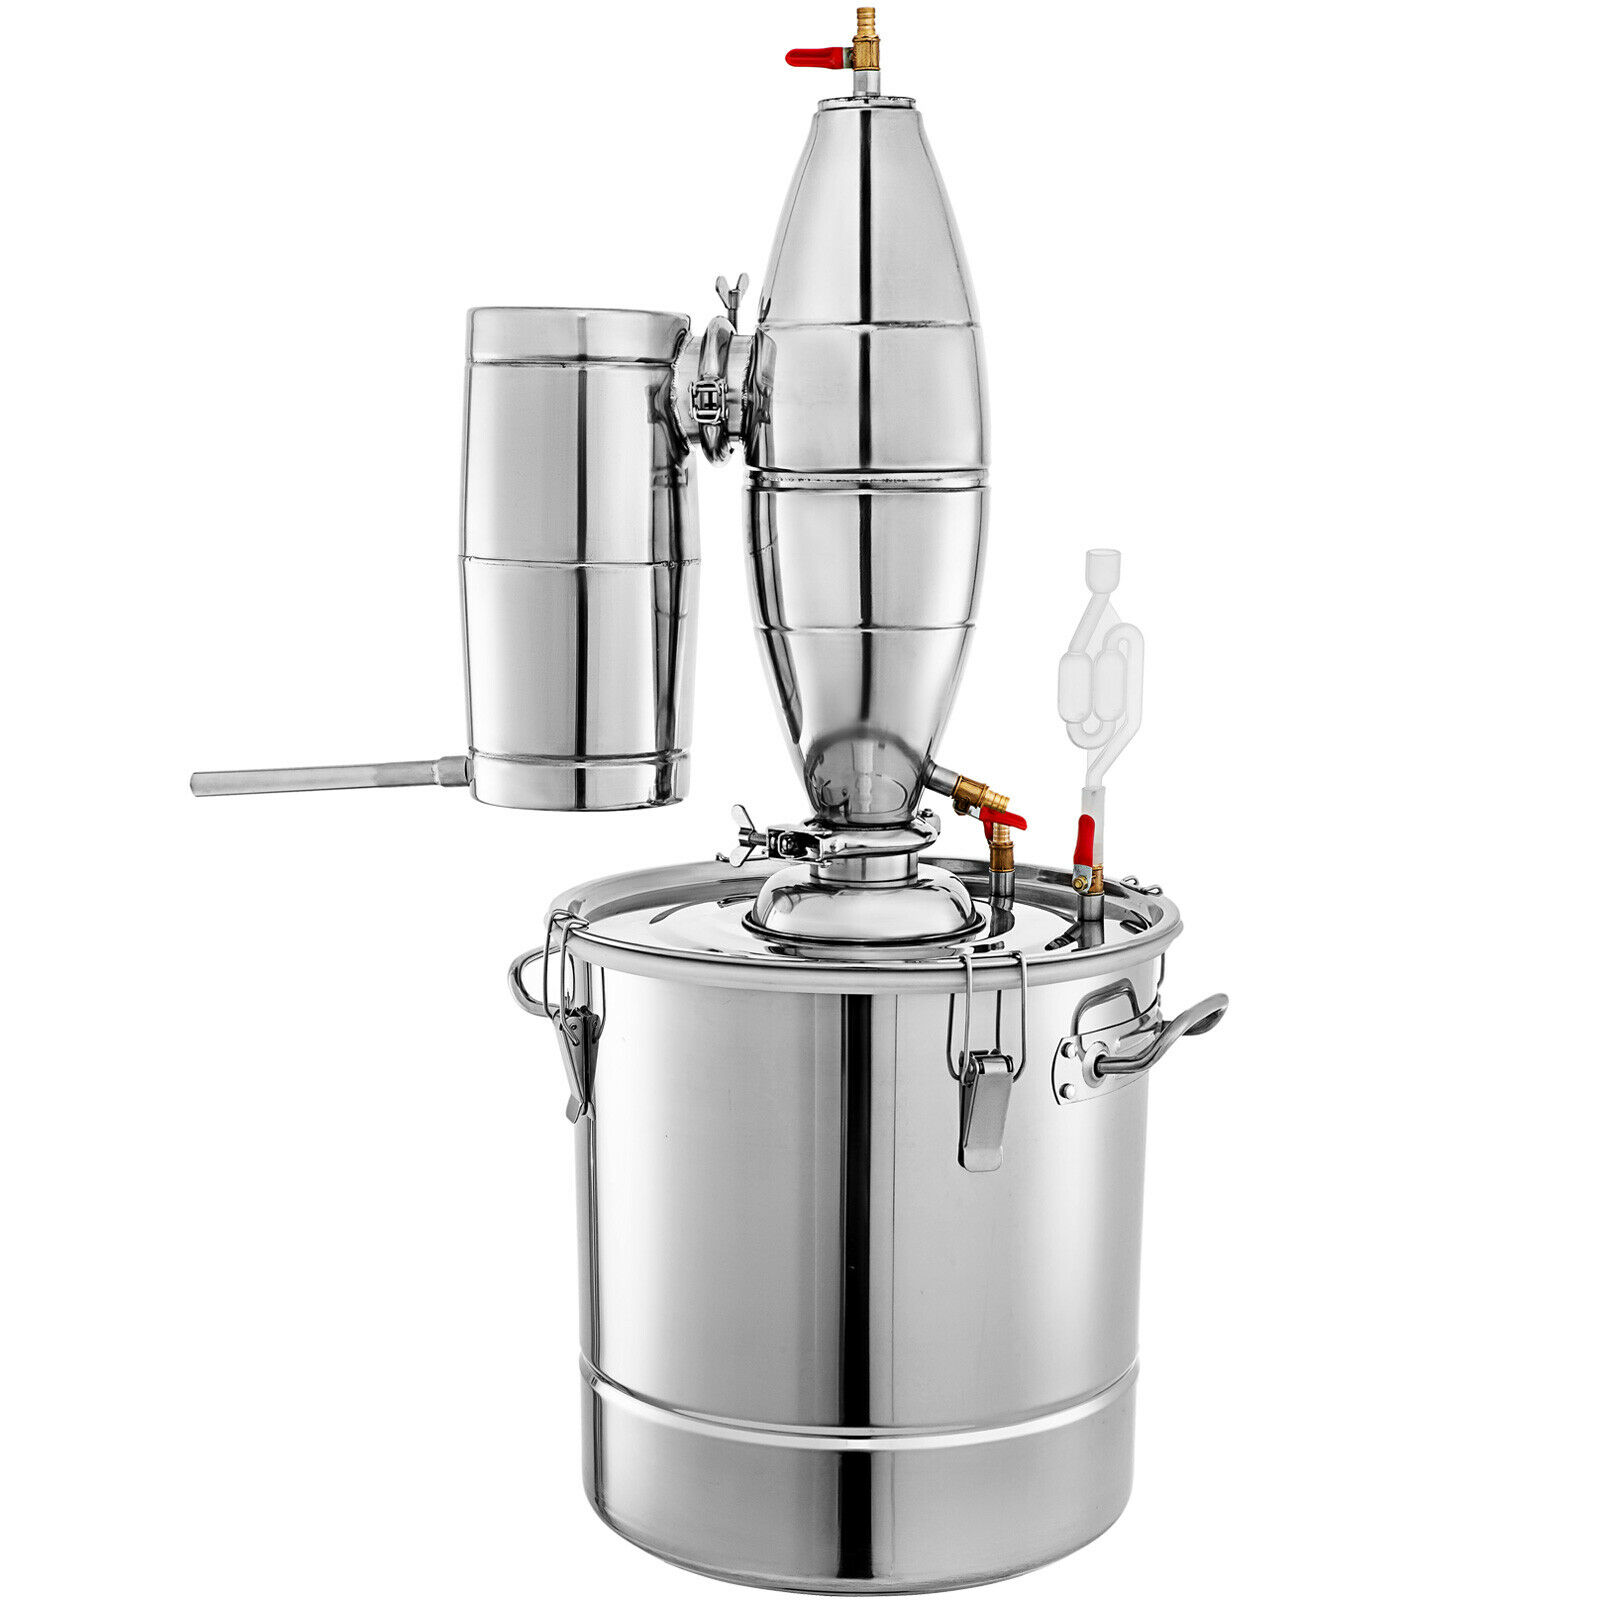 Destilliergerät 2.8 Liter mit Thermometer. Für Essenzen und zur Dekoration